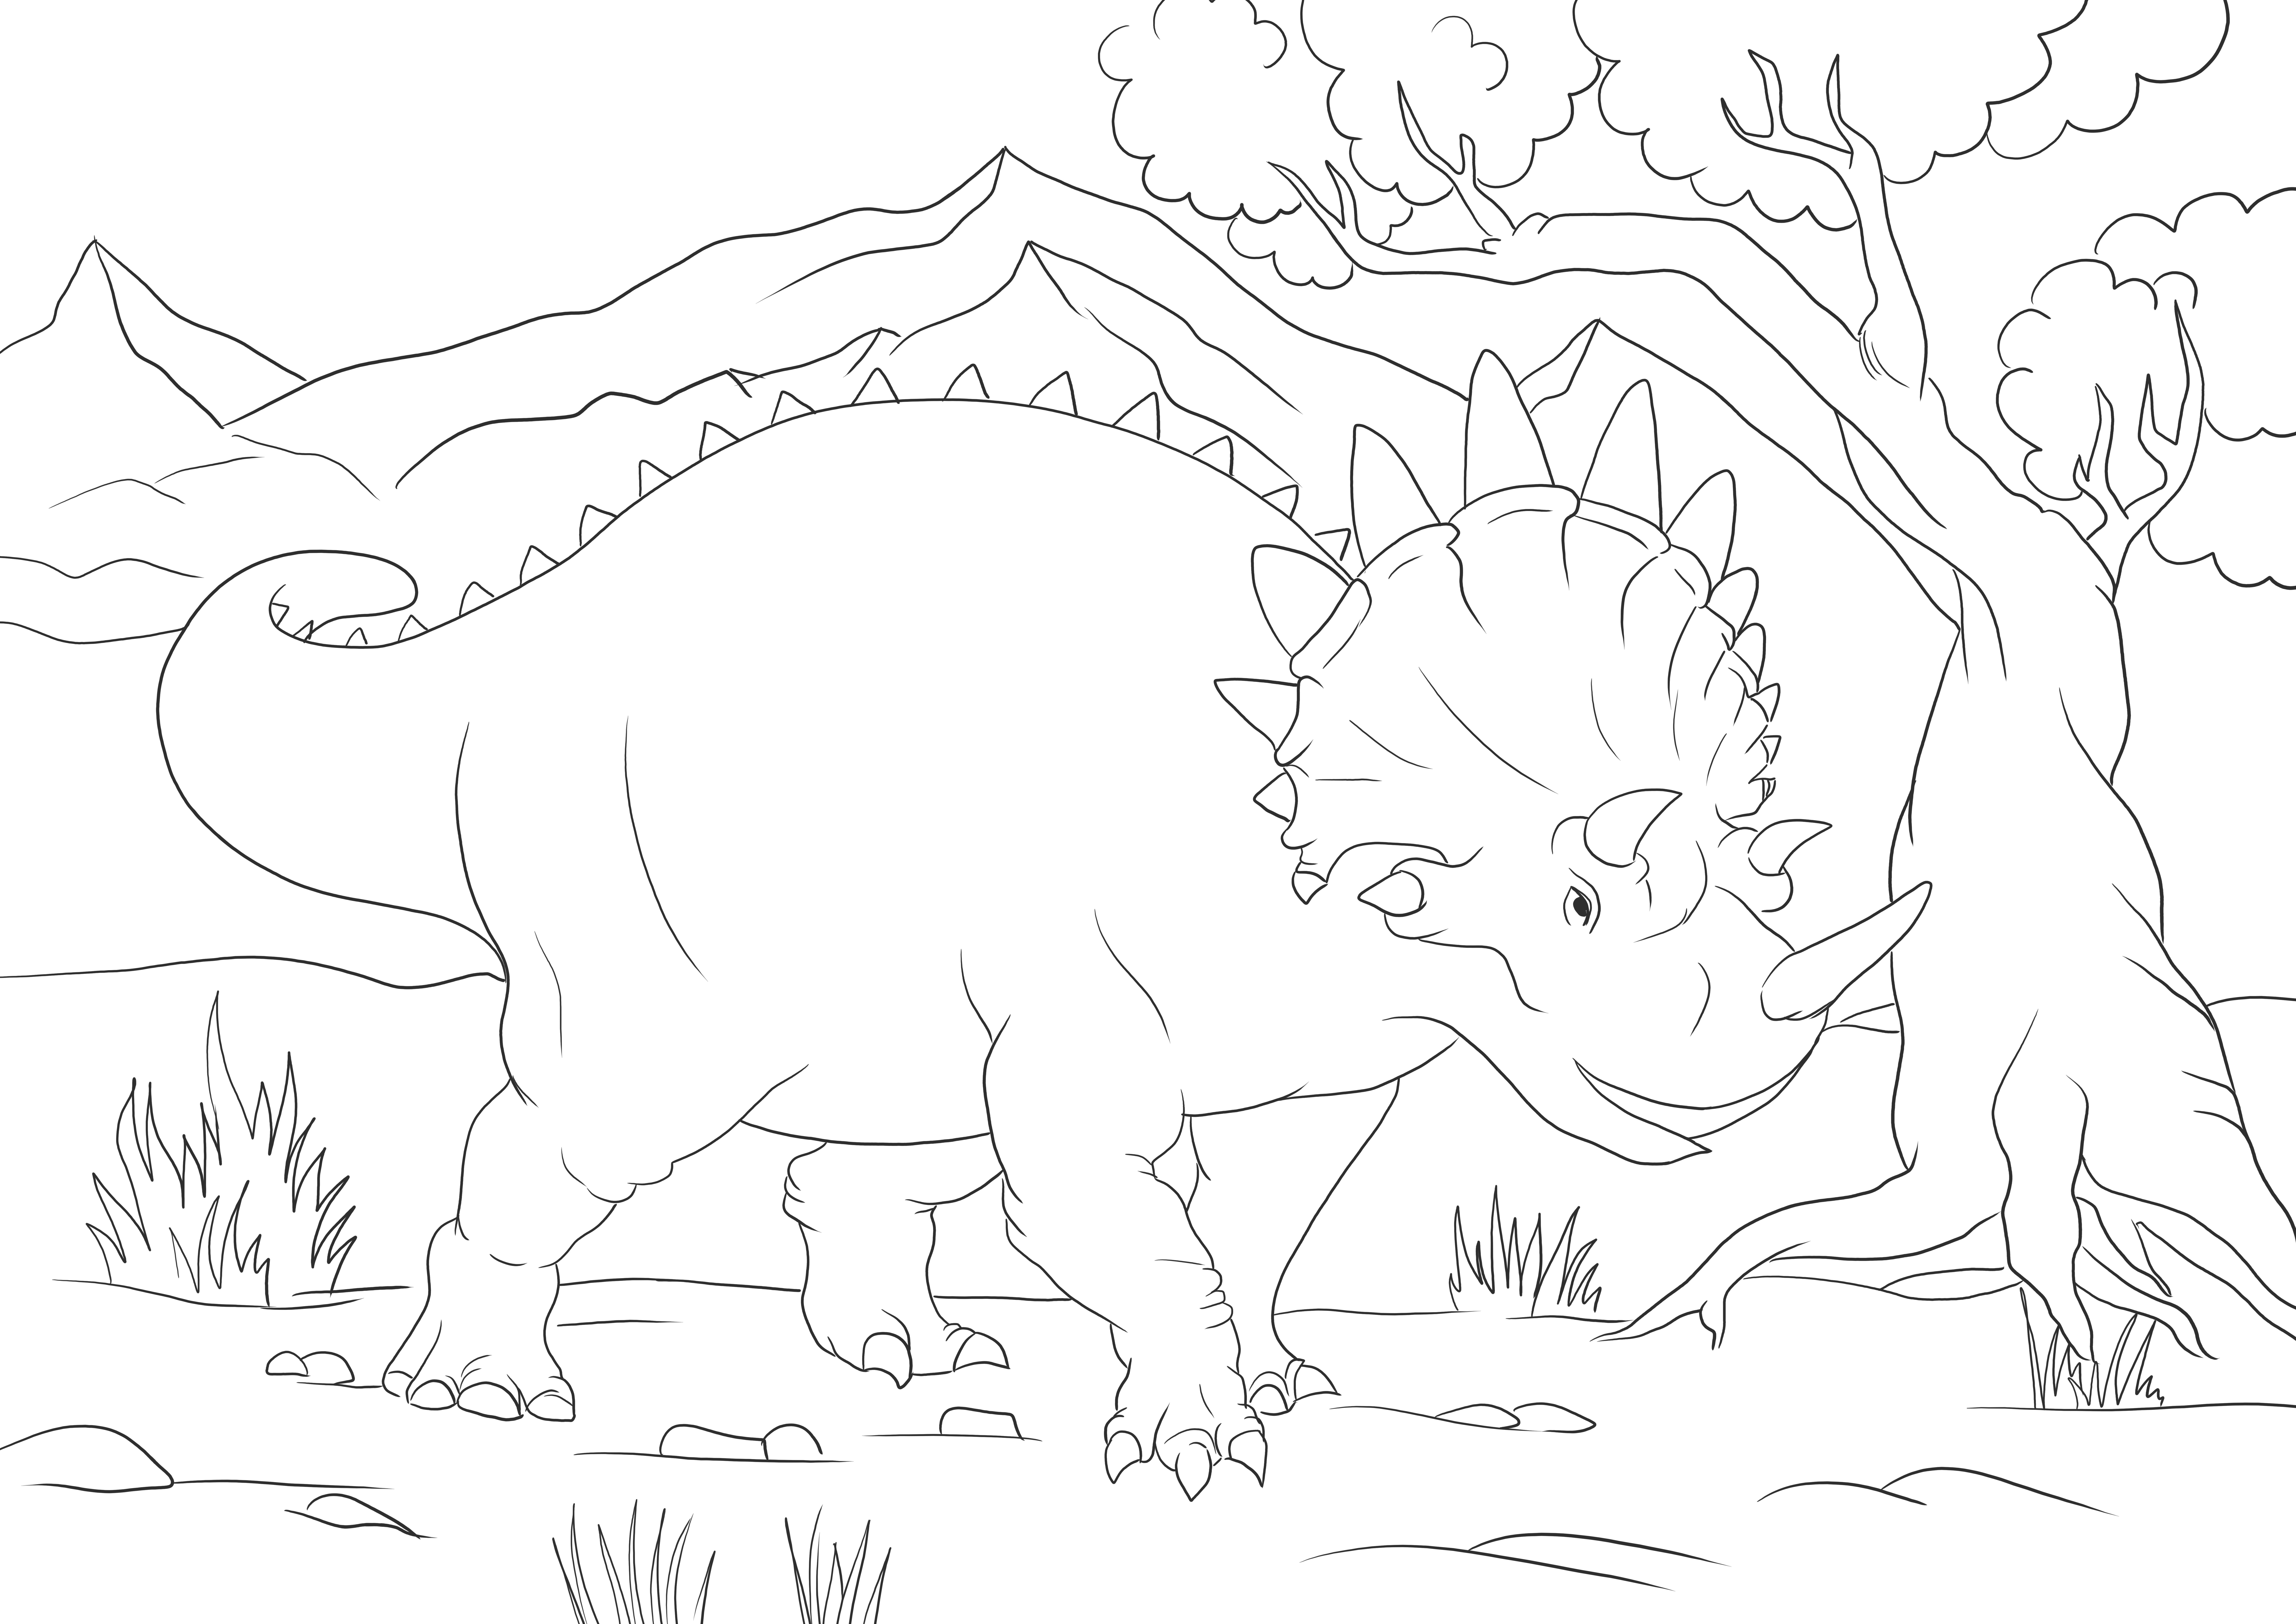 Big Triceratops gratis afdrukken of downloaden van afbeeldingen voor kinderen om in te kleuren kleurplaat